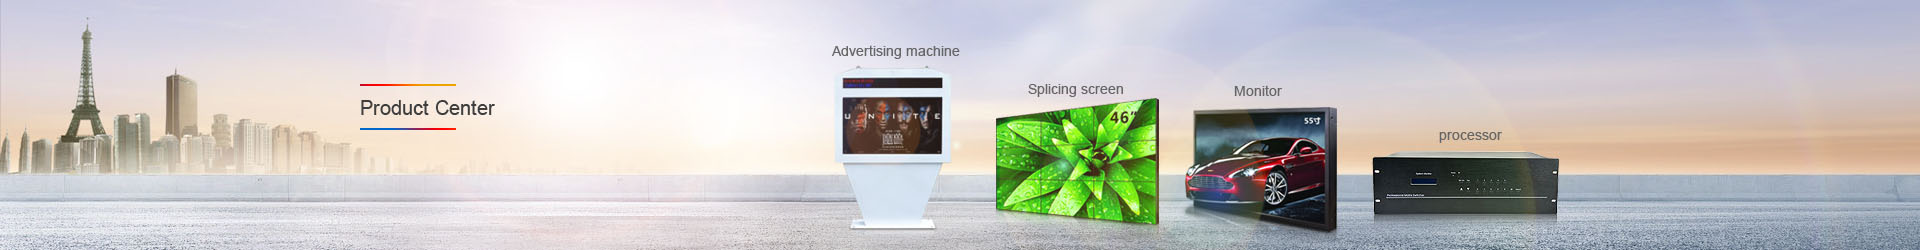 outdoor stand-floor horizontal screen advertising machine